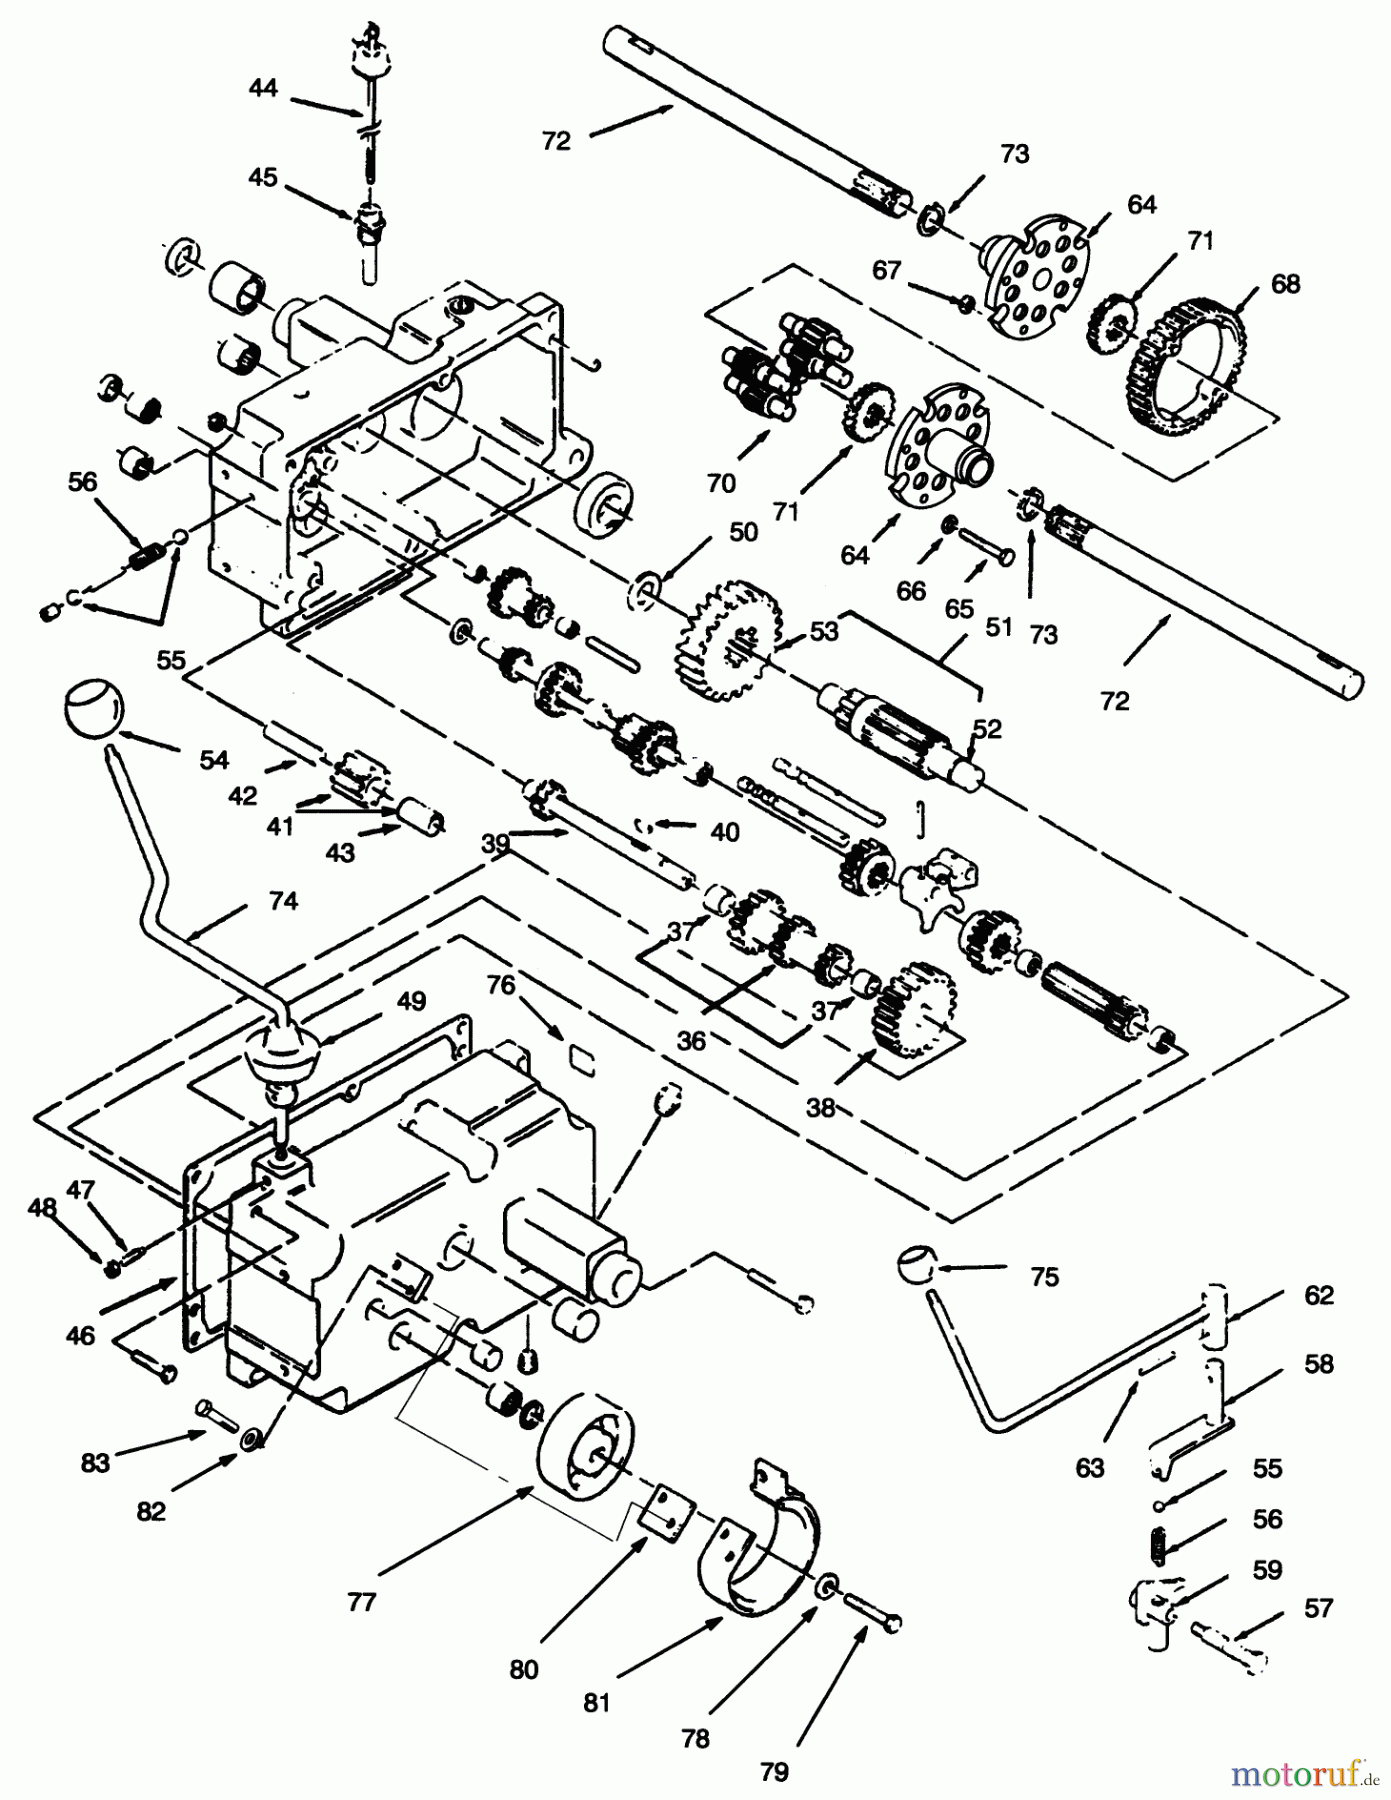  Toro Neu Mowers, Lawn & Garden Tractor Seite 1 73420 (416-8) - Toro 416-8 Garden Tractor, 1995 (5900715-5999999) TRANSMISSION 8-SPEED #2